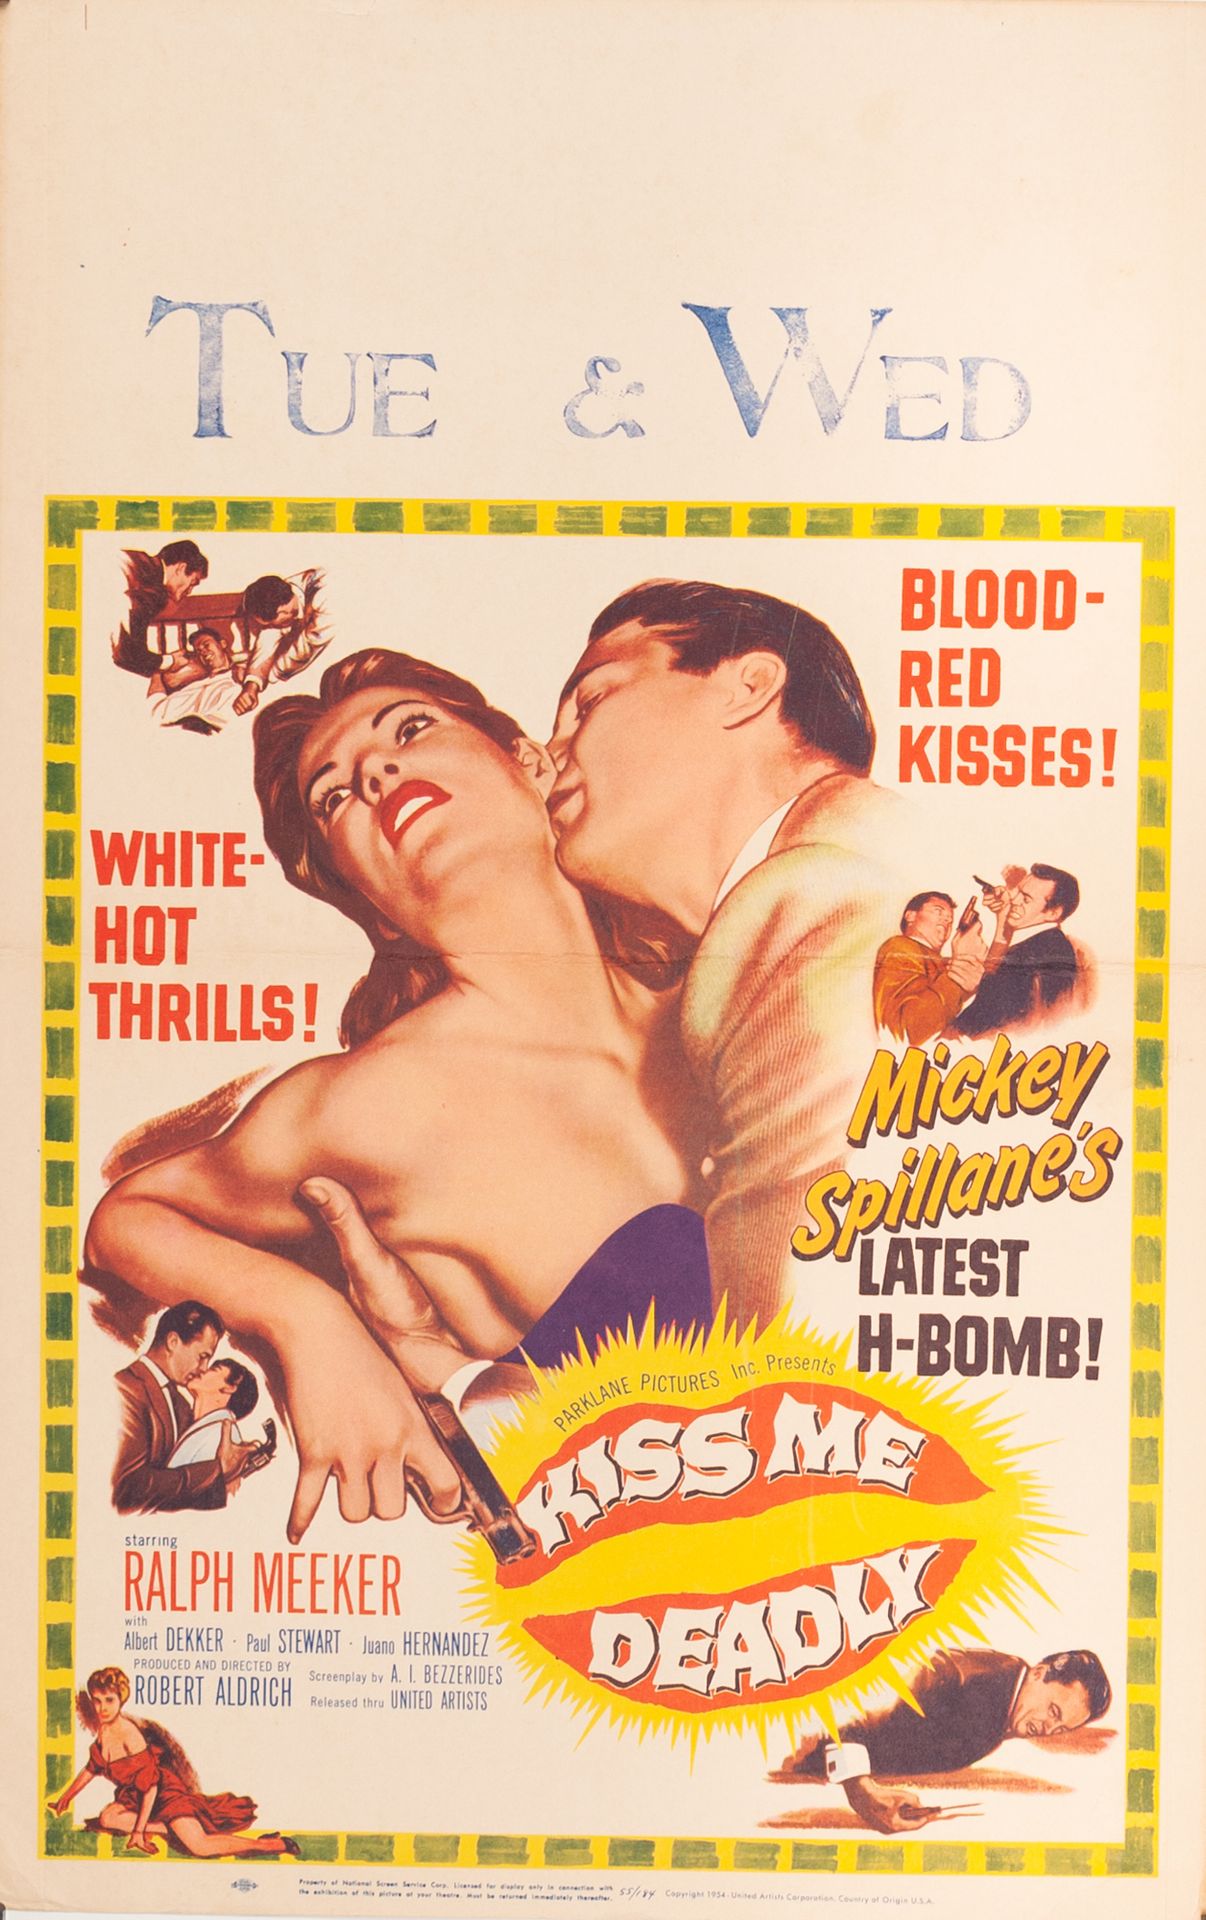 Null KISS ME DEADLY 罗伯特-奥尔德里奇。1955年。
36 x 56 cm。美国海报（窗口卡）。无符号。没有印刷。
条件A